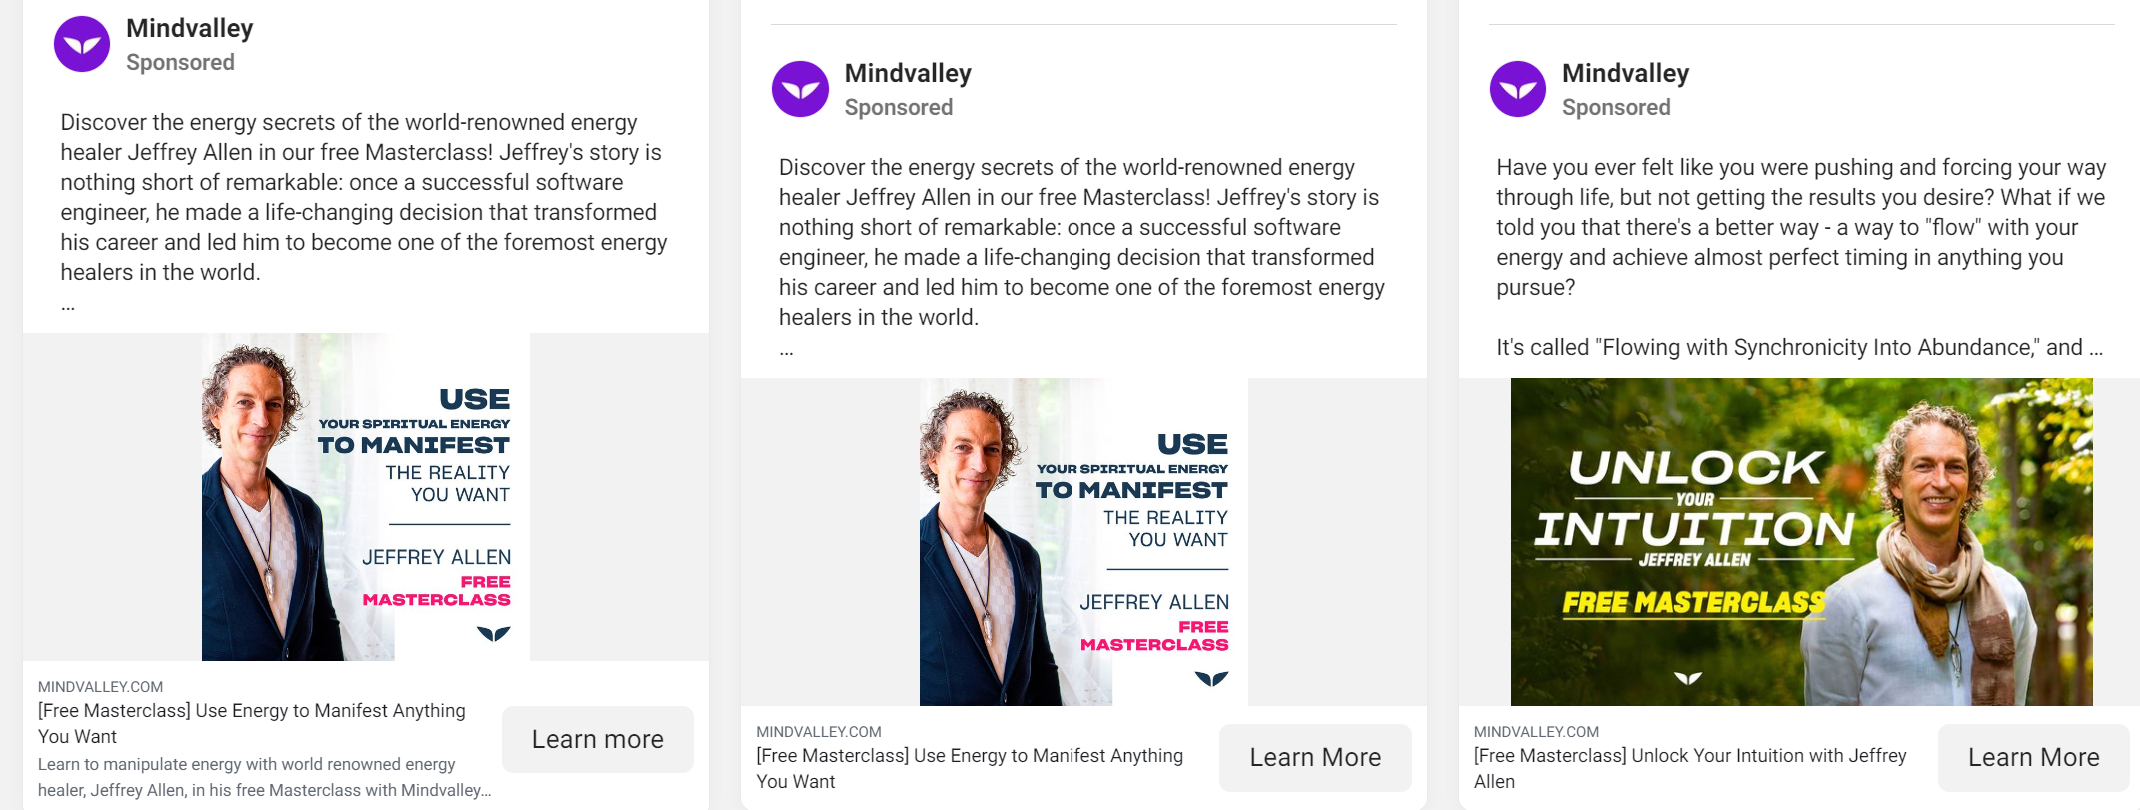 Mantra meditation keywords for Mindvalley ads